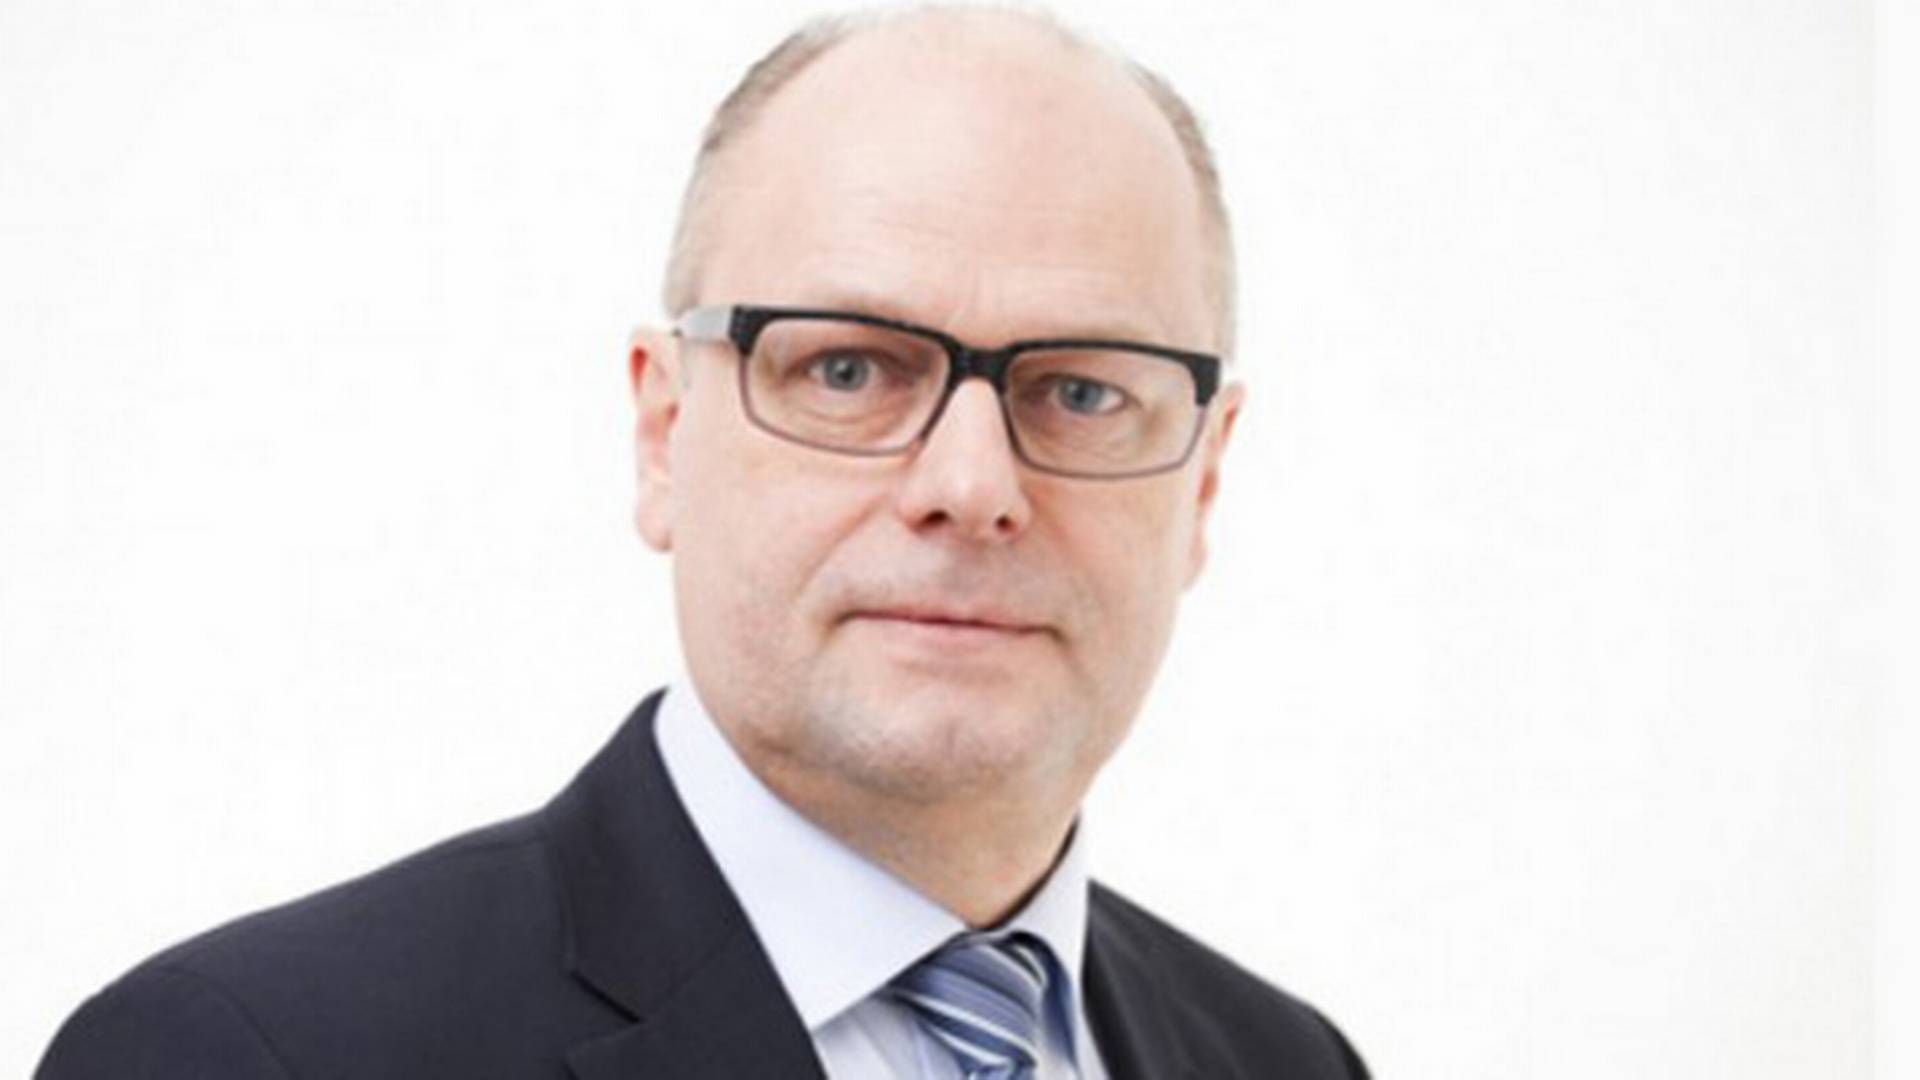 Niels Jensen, direktør i Daglivareleverandørerne, DLF.